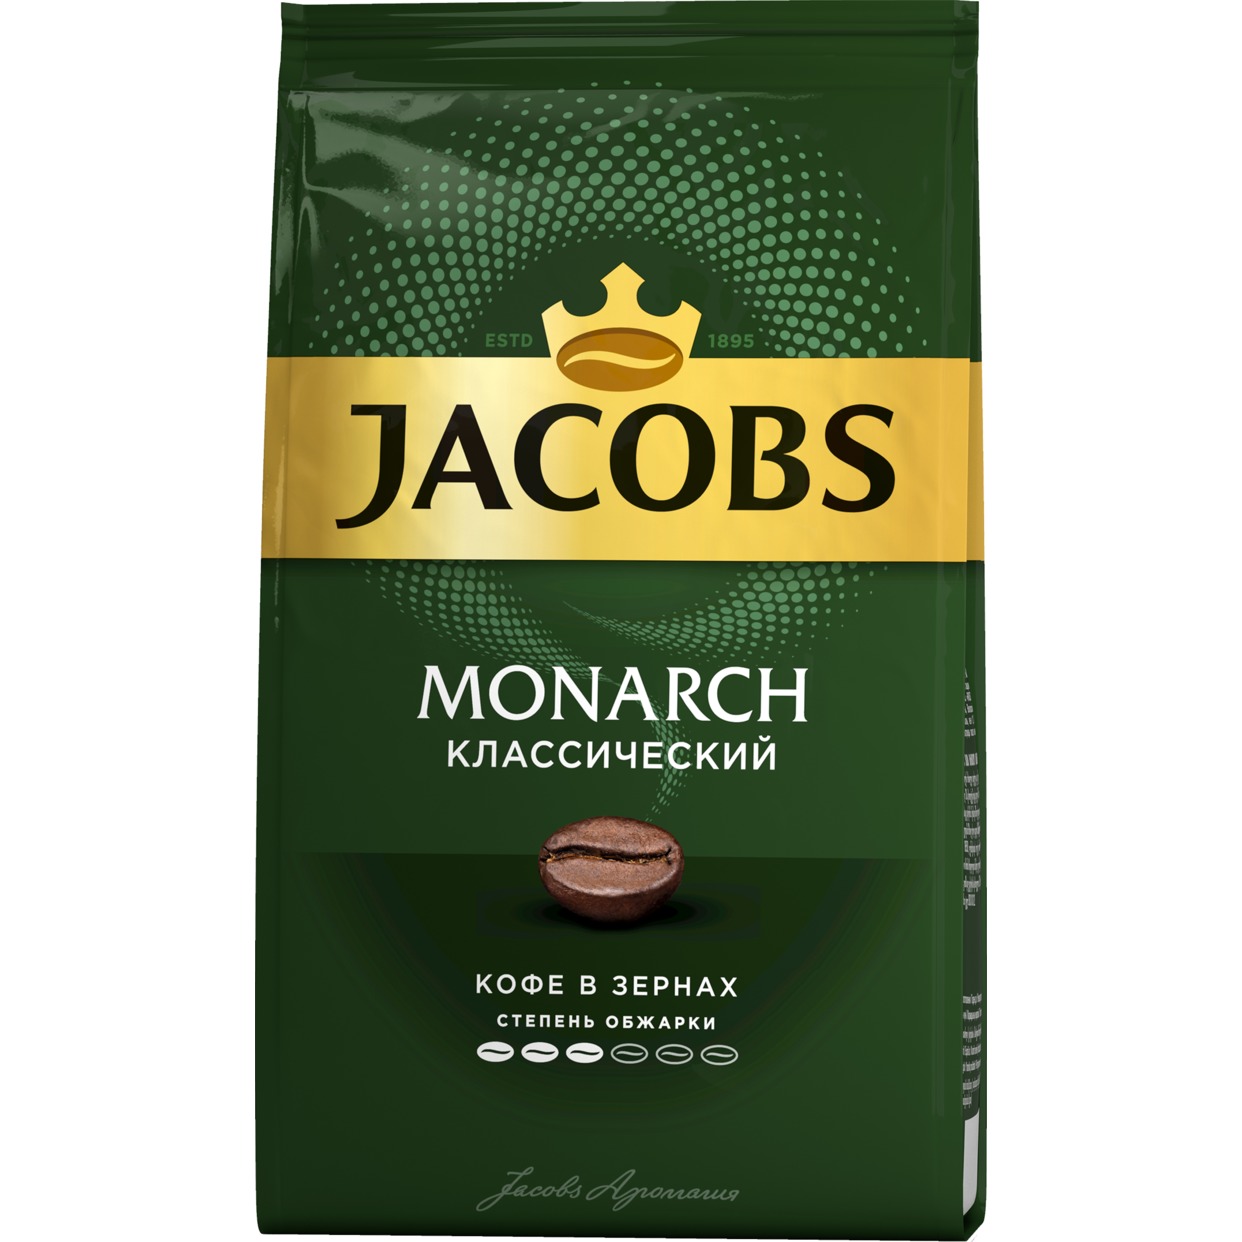 Кофе Jacobs Monarch, в зернах, 800 г по акции в Пятерочке